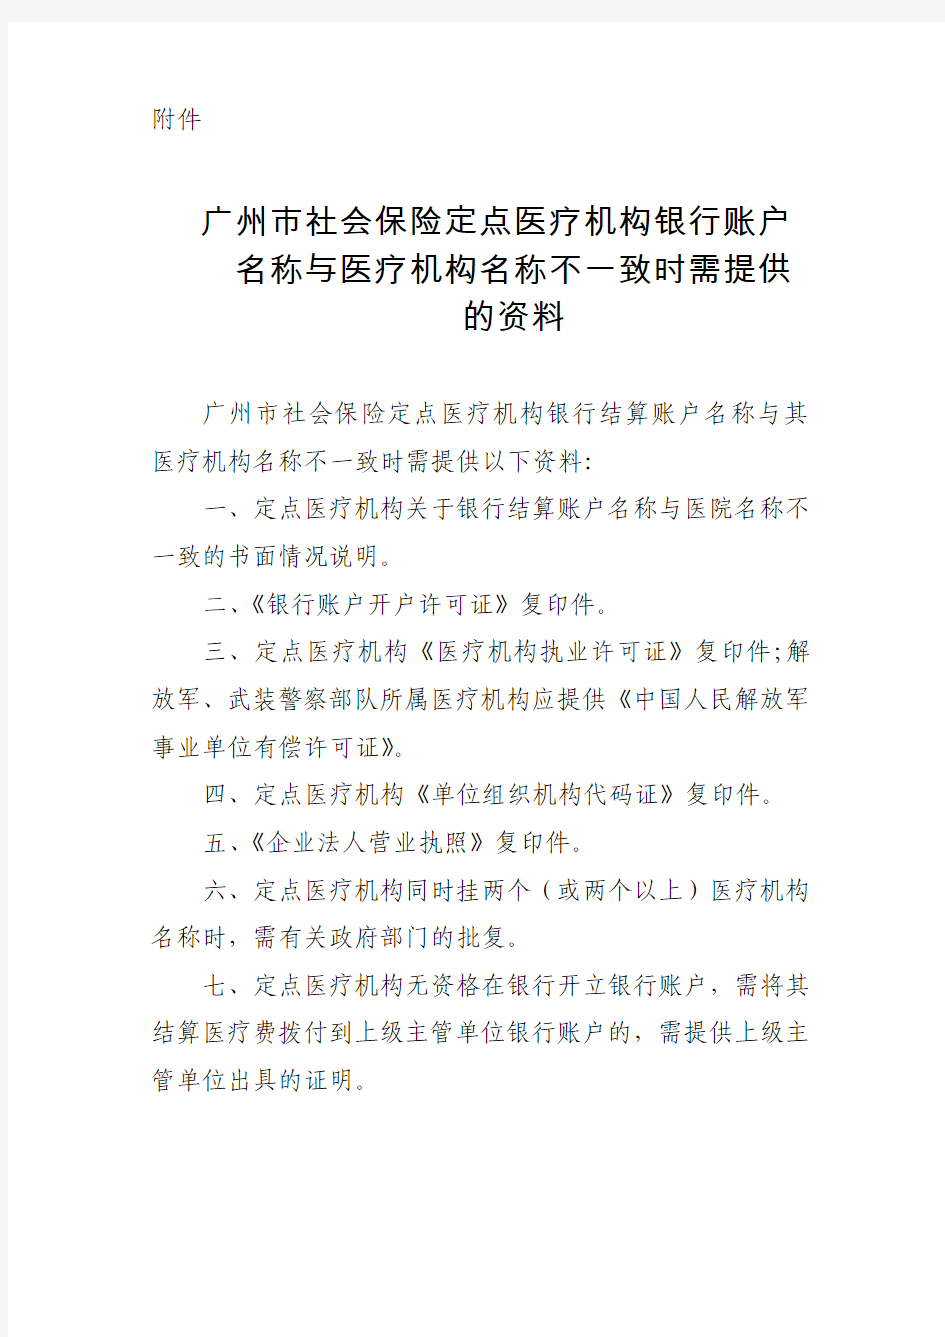 广州市社会保险定点医疗机构医疗费支付银行结算账户登记表